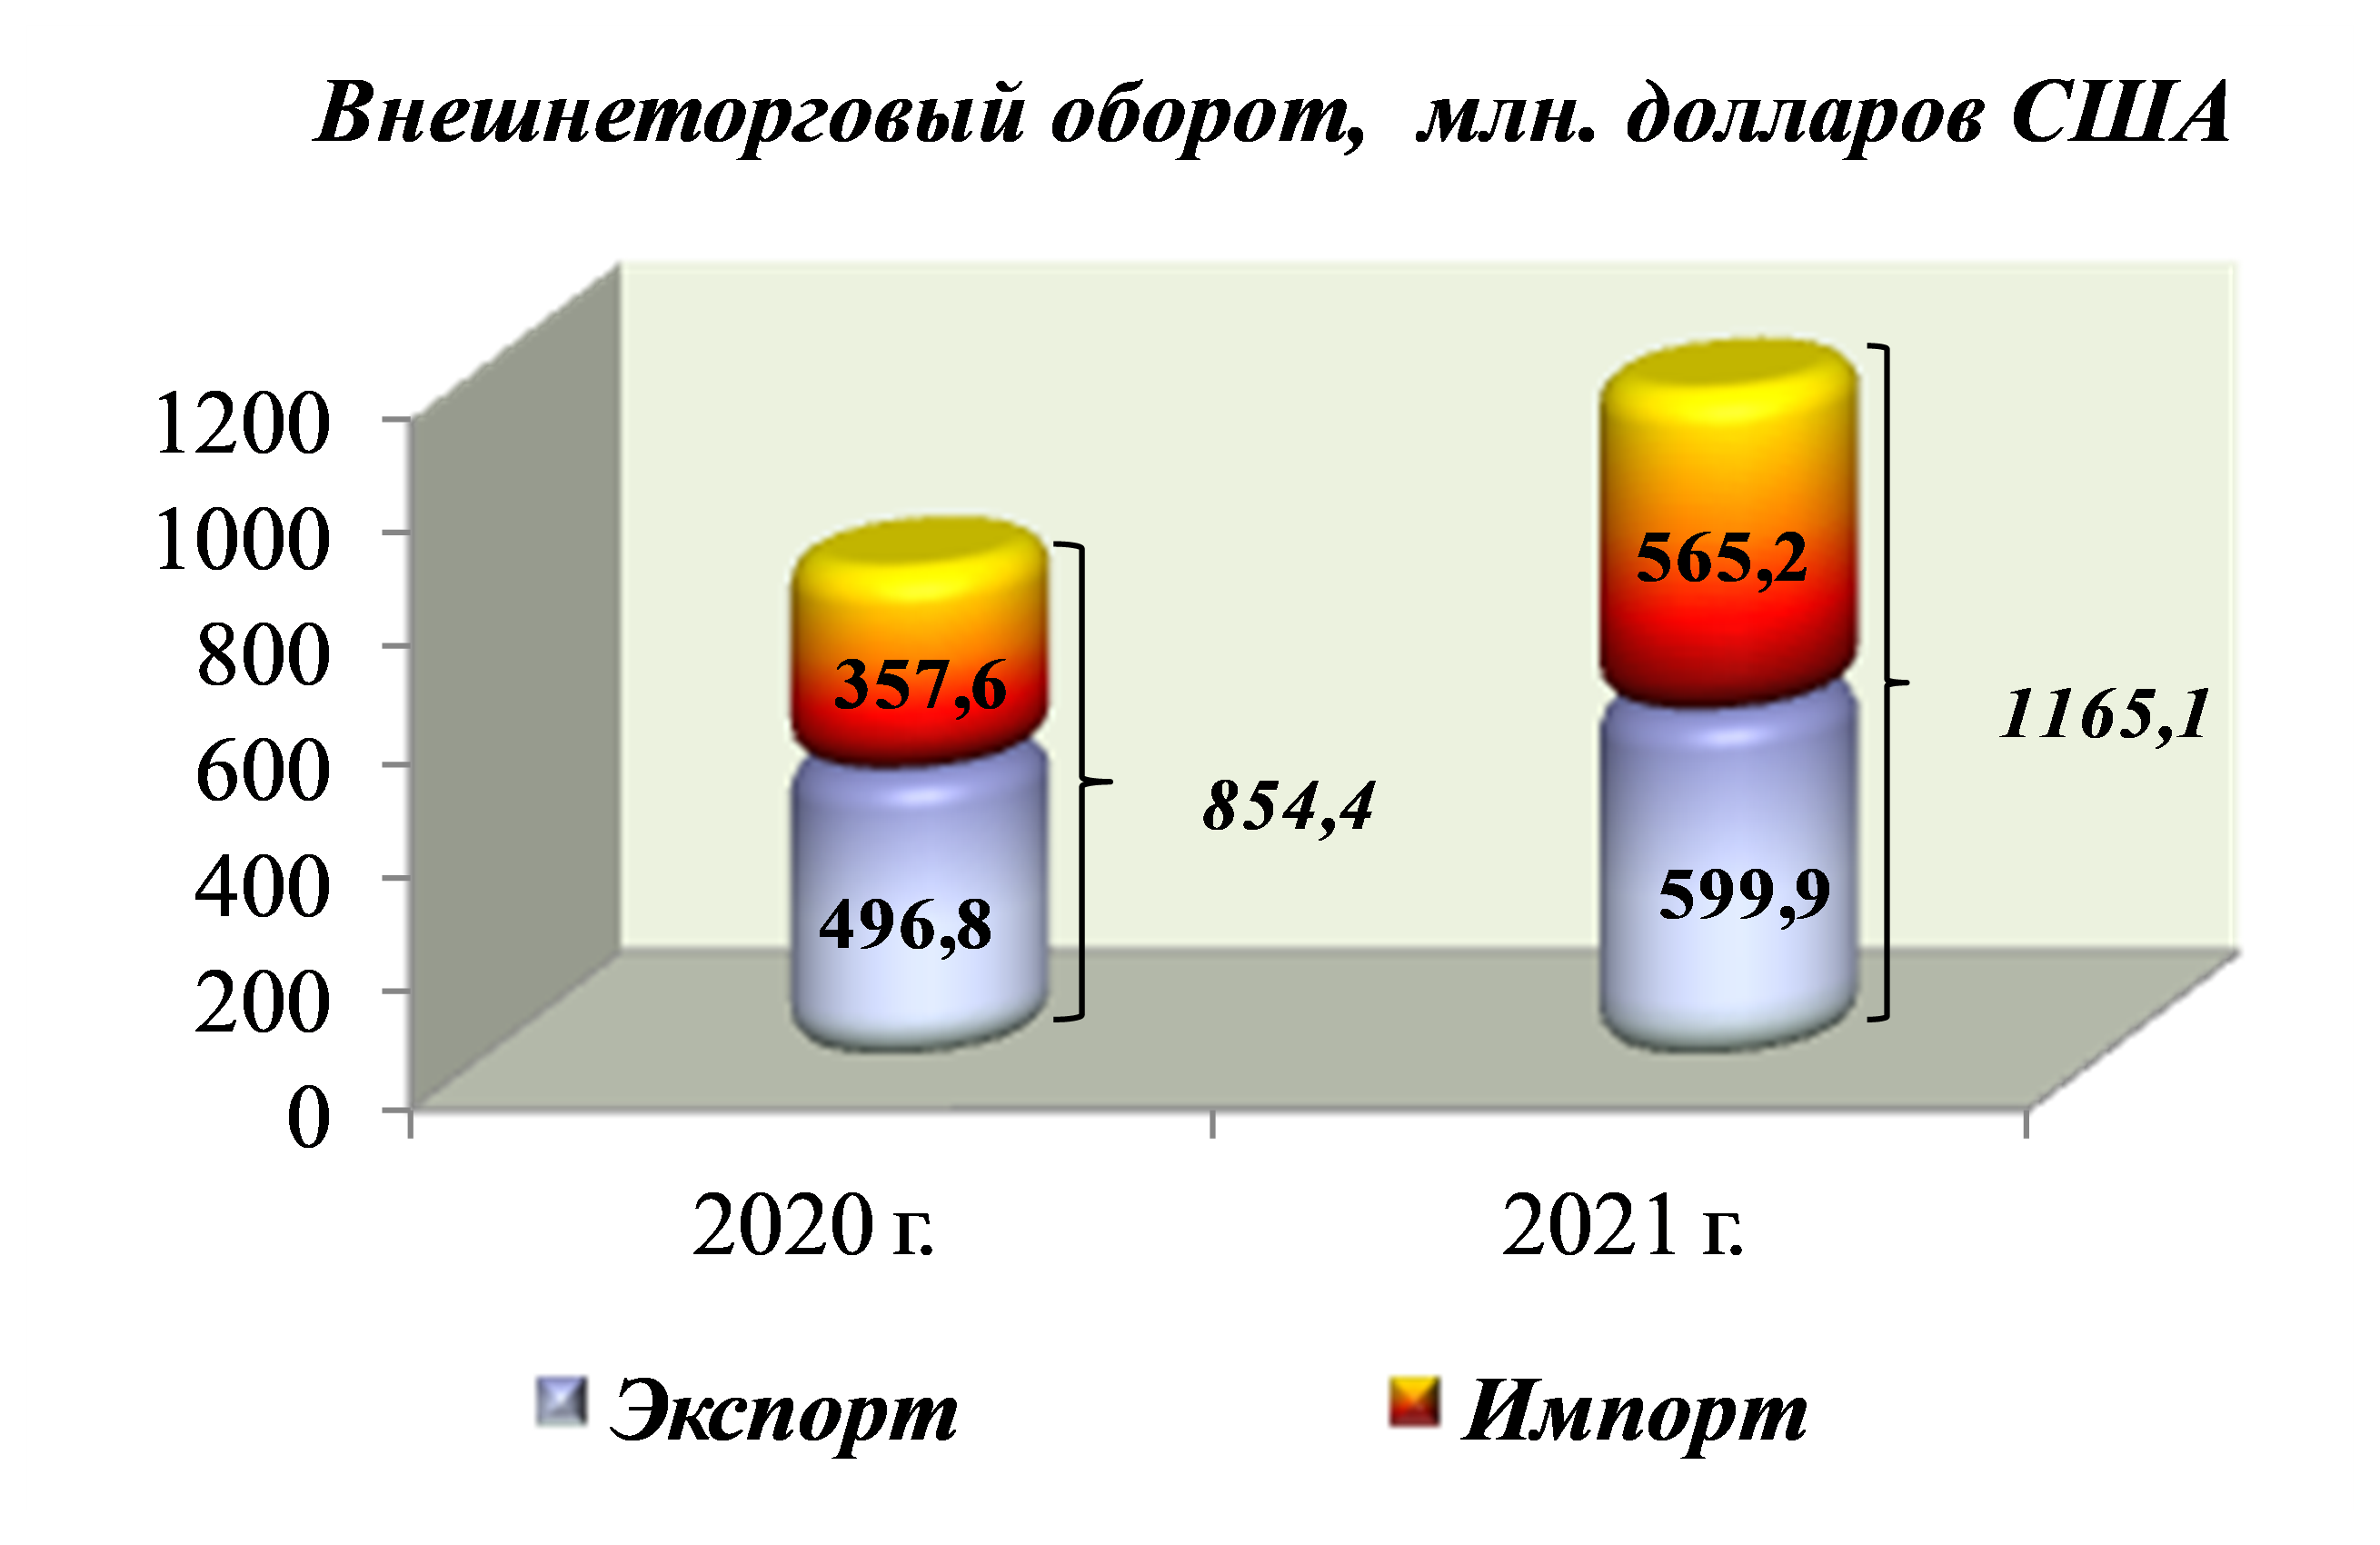 Торговля рф 2020. Внешняя торговля России 2021. Объем внешней торговли. Внешнеторговый оборот России в 2021 году. Экспорт и импорт России 2021.